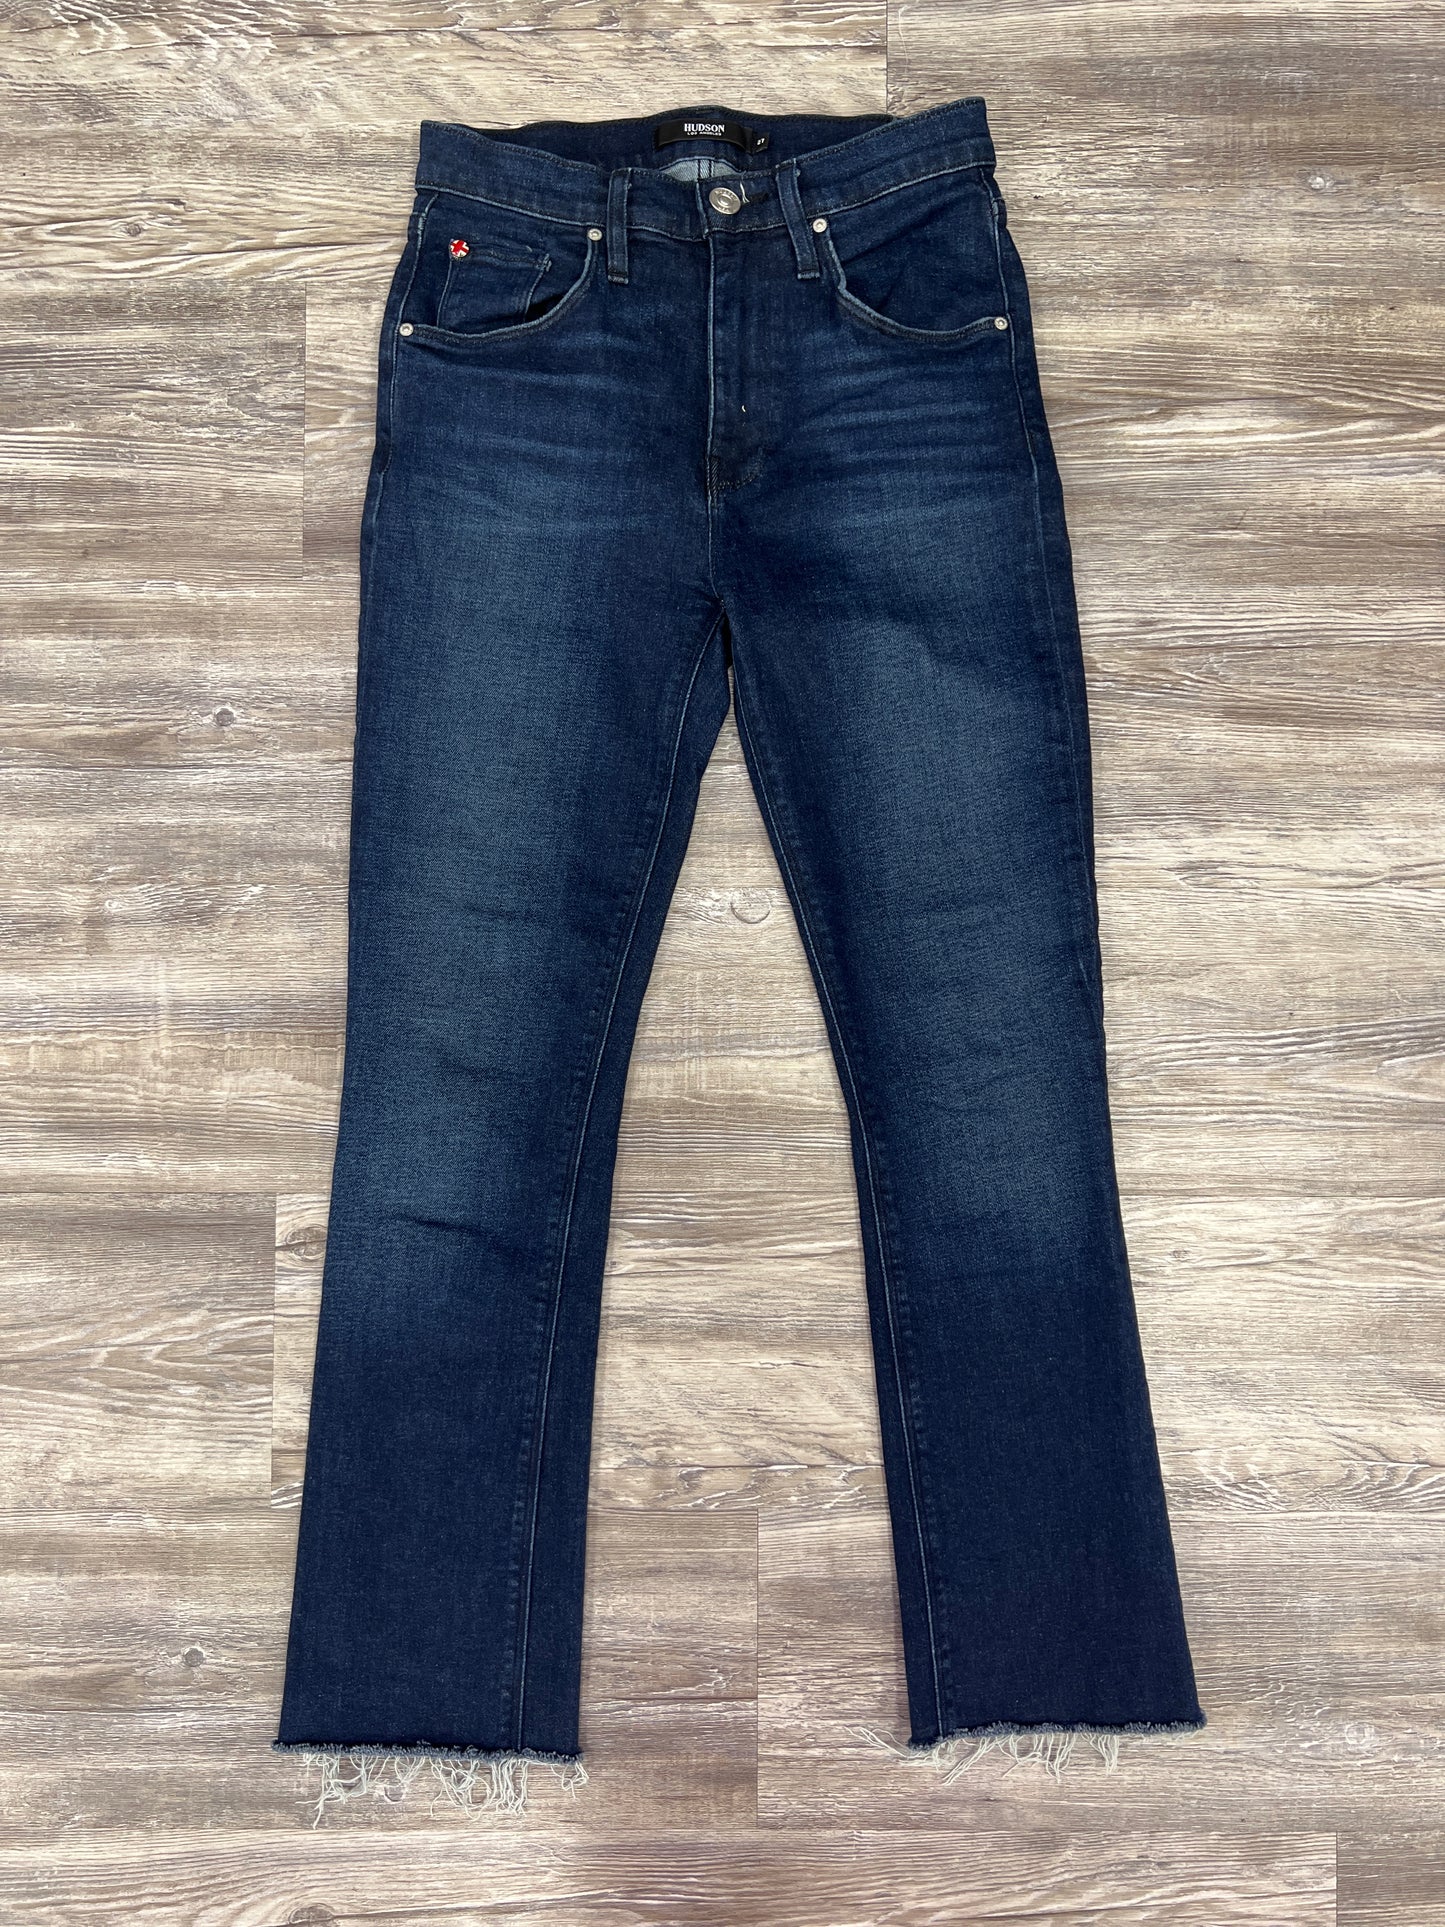 Jeans Designer By Hudson Size: 4